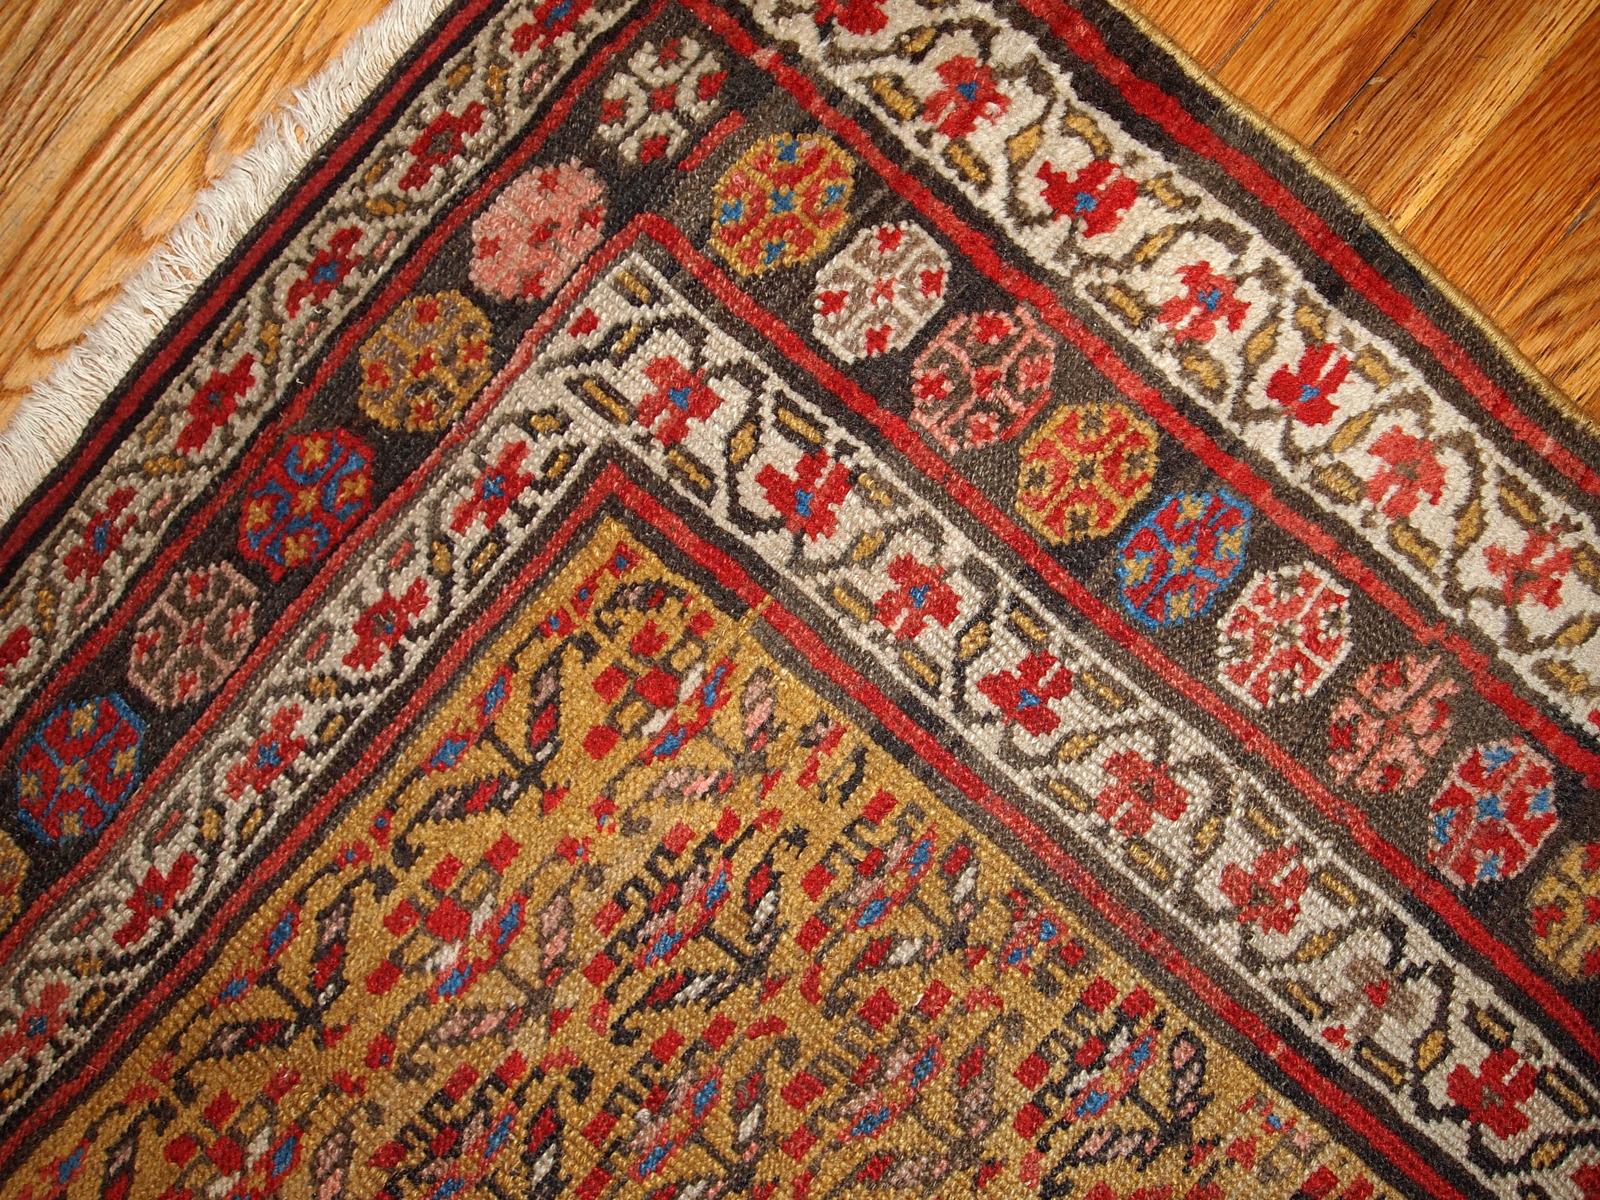 Antiker Teppich im kurdischen Stil in gelben, weißen und roten Farben. Der Teppich stammt aus dem Ende des 19. Jahrhunderts und ist in gutem Zustand. Maße: 4.1' x 7.7' (125cm x 235cm).